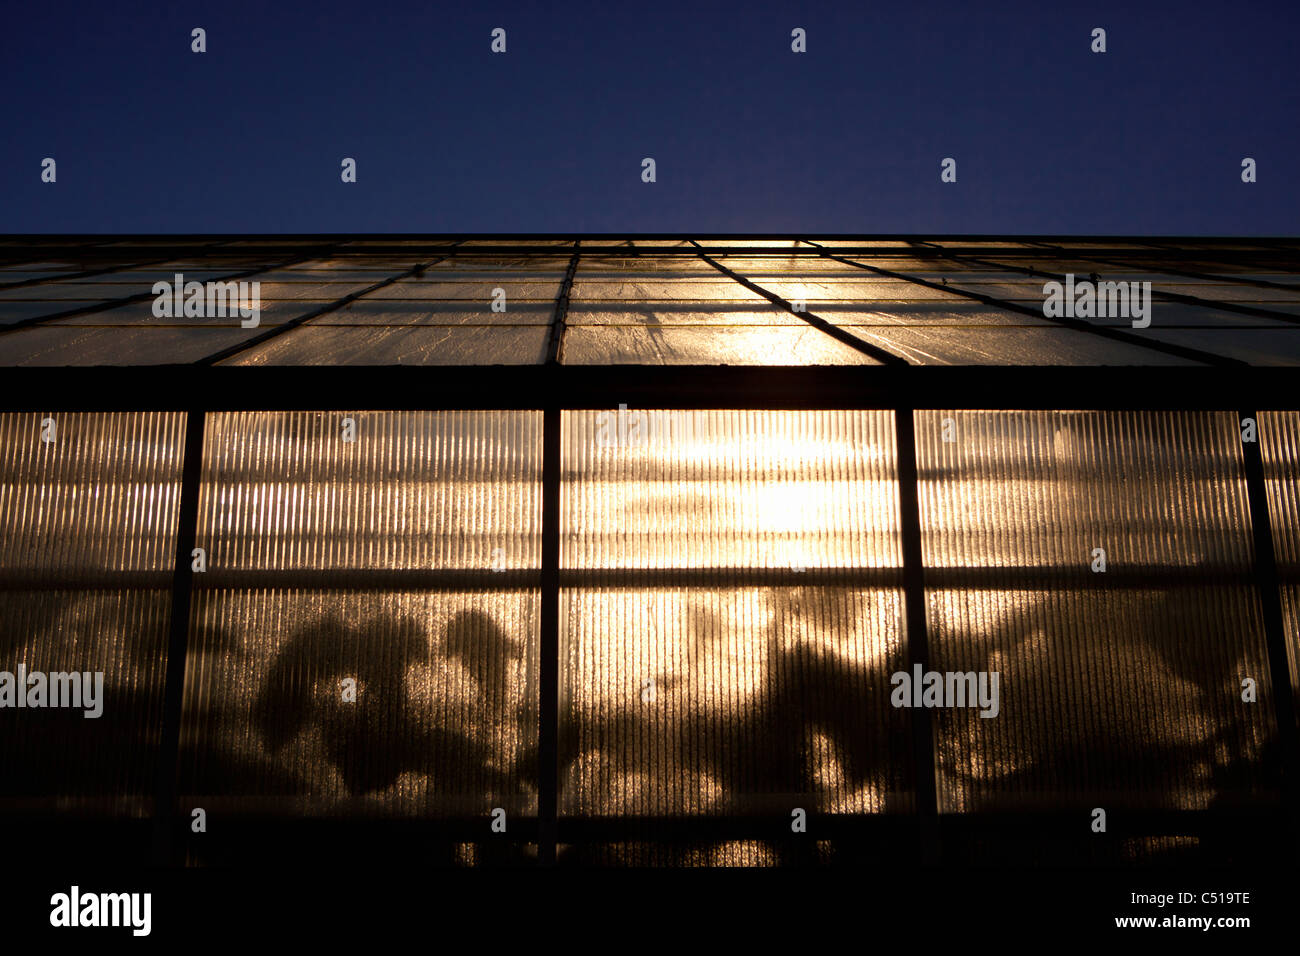 In einem Gewächshaus Milchglas Fenster spähen und die Schatten und Umrisse  der Blätter zu erkennen Stockfotografie - Alamy